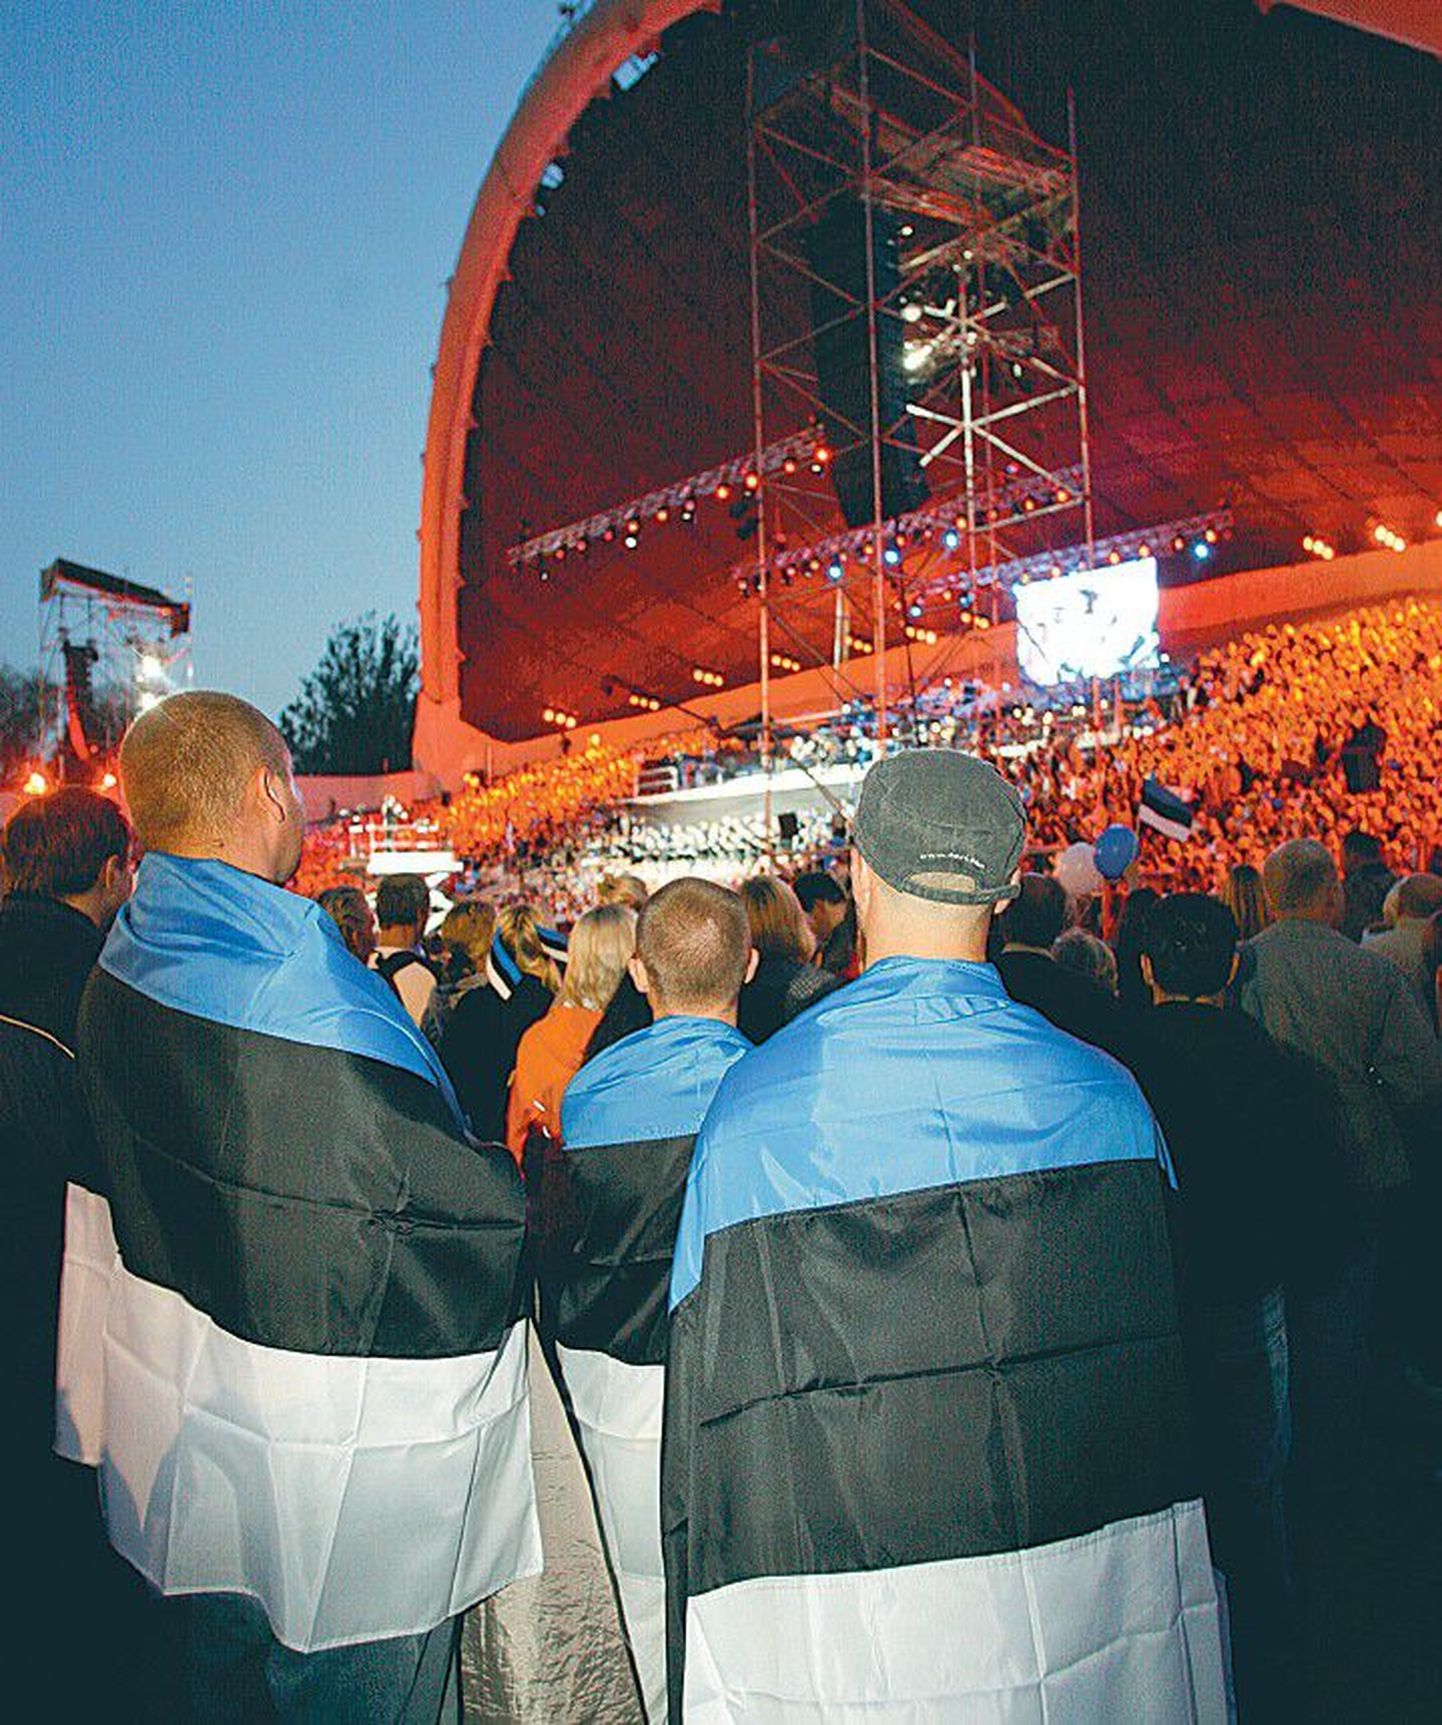 Laulupeod sobivad riiklike tähtpäevade tähistamiseks hästi – aastal 2008 õnnestus Eesti Vabariigi 90. sünnipäeva tähistamine öölaulupeoga suurepäraselt.